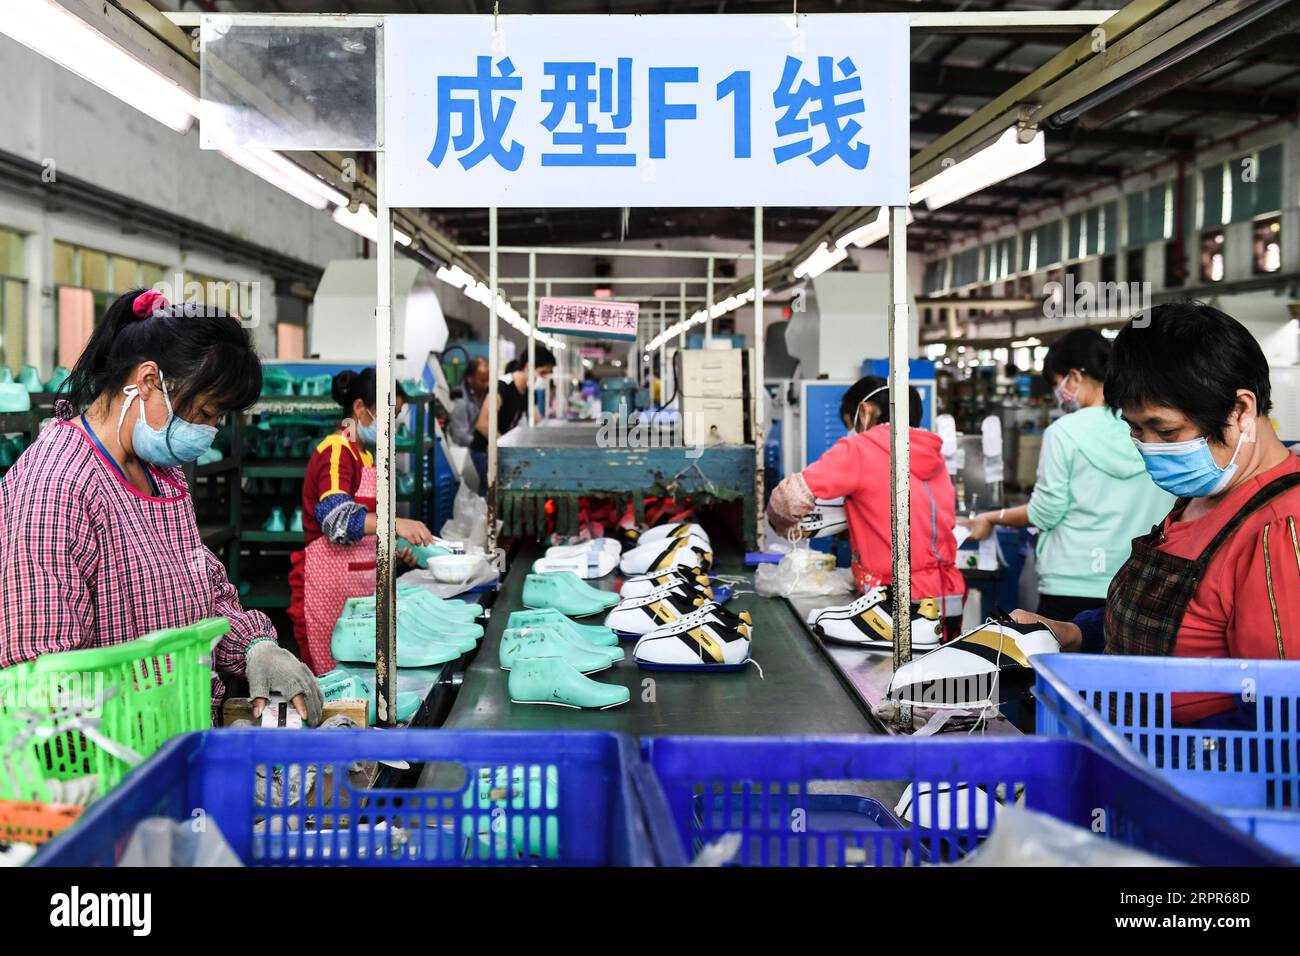 200327 -- NANNING, 27. März 2020 -- Arbeiter machen Turnschuhe in einem Armutsbekämpfungsworkshop in Guiping, Südchinas autonomer Region Guangxi Zhuang, 28. Februar 2020. Die autonome Region Guangxi Zhuang, die stark von Chinas bevölkerungsreichster ethnischer Minderheit Zhuang und vielen anderen Minderheitengruppen bewohnt ist, ist seit langem von Armut heimgesucht. Es war eine wichtige Front in Chinas Armutsbekämpfungskampagne, die darauf abzielt, die absolute Armut bis 2020 zu beseitigen. Die Region hat erhebliche Fortschritte bei der Armutsbekämpfung und der Wiederbelebung des ländlichen Raums erzielt. Statistiken des regionalen Büros für Armutsbekämpfung zeigen, dass Guangx Stockfoto